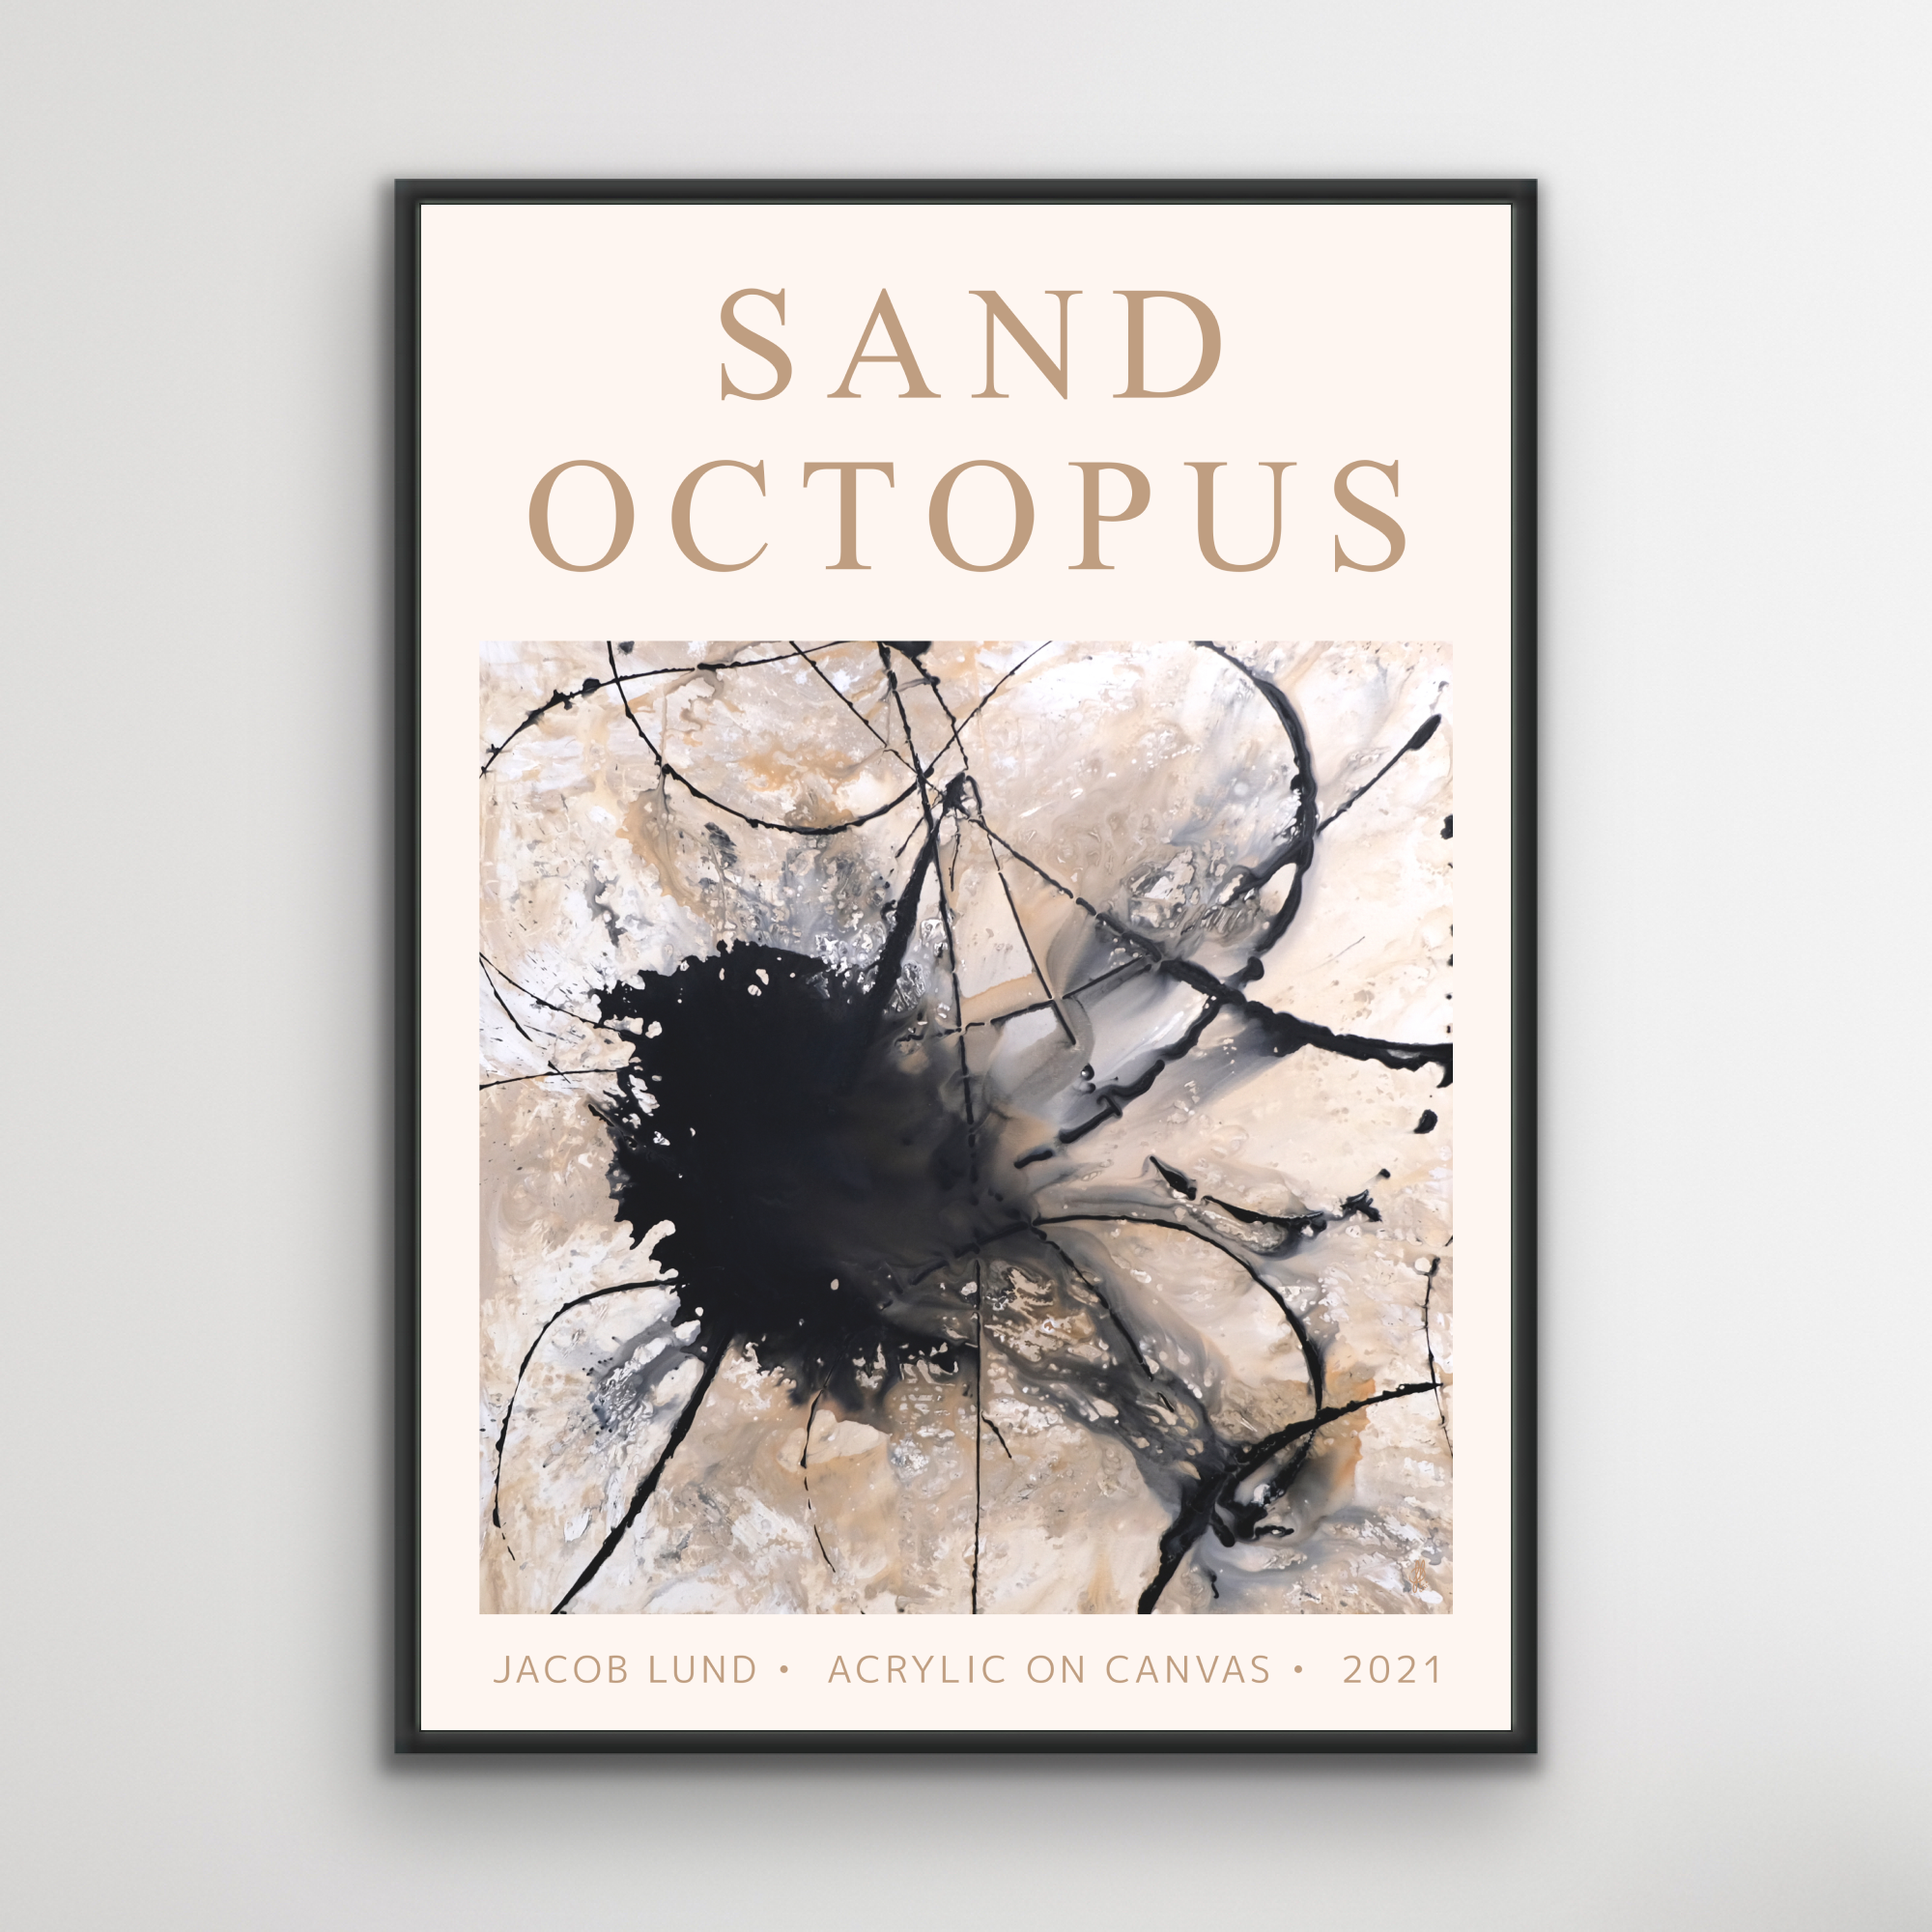 Plakat: "Sand Octopus"